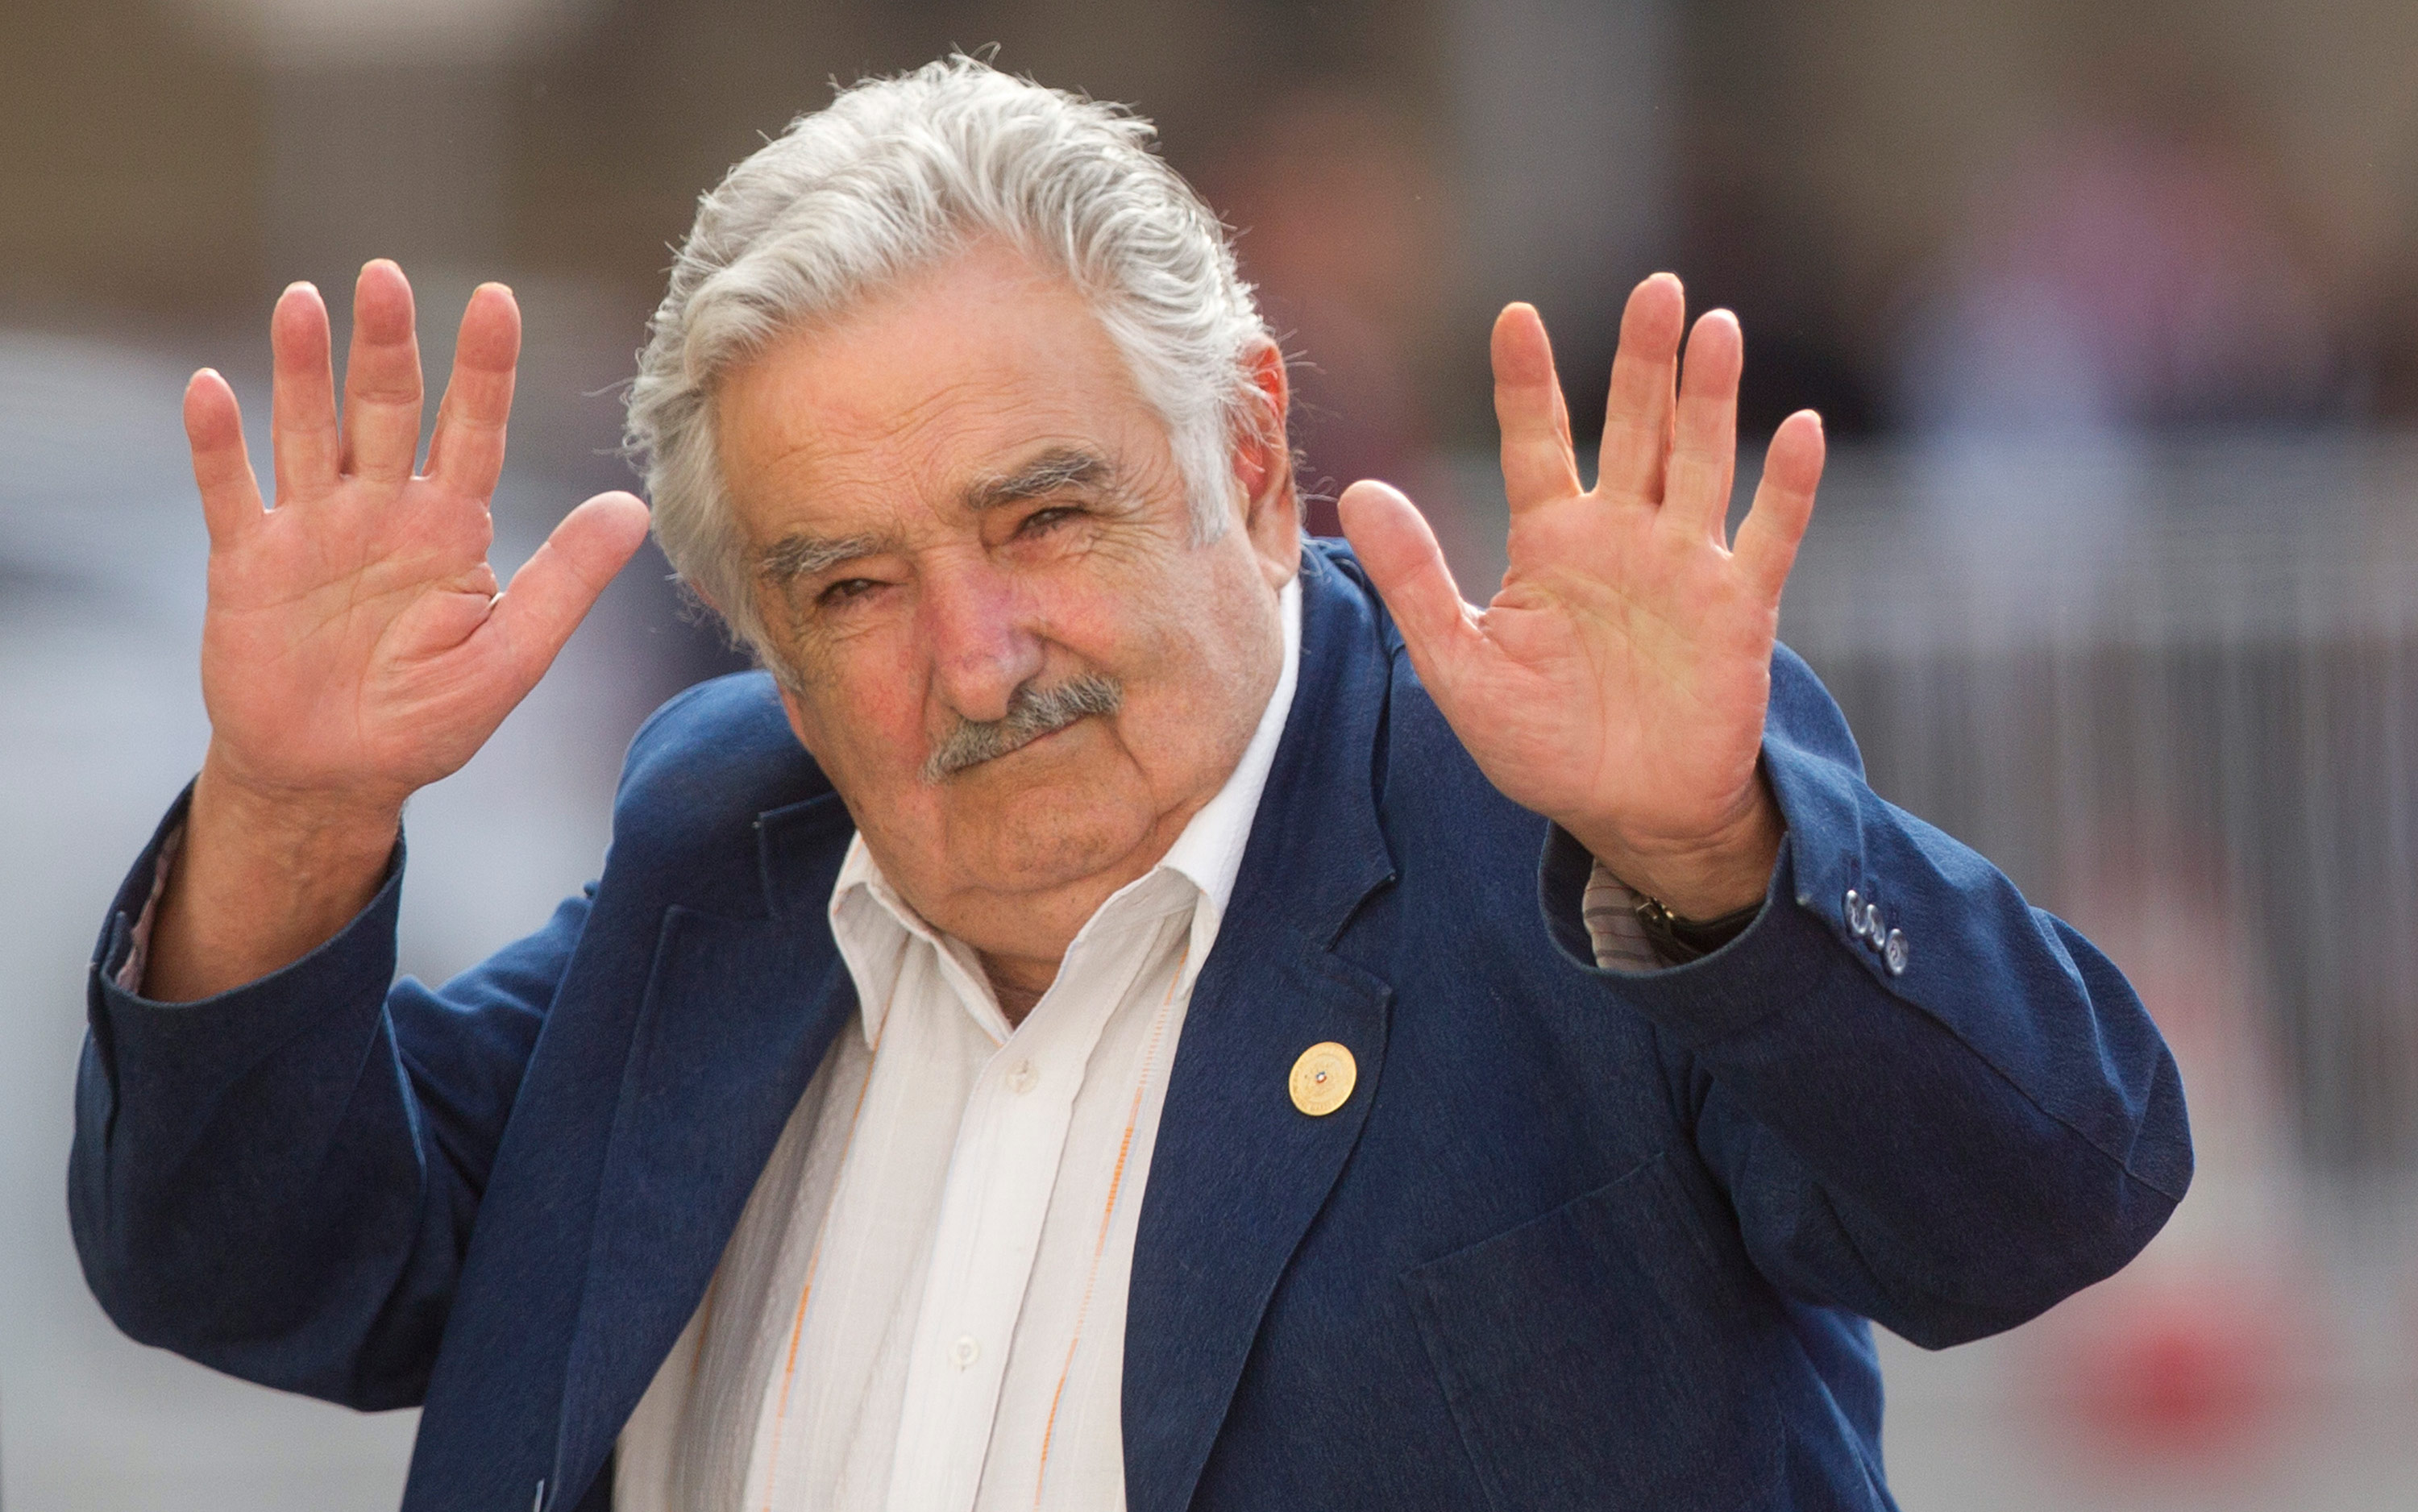 La falsa muerte de José Mujica